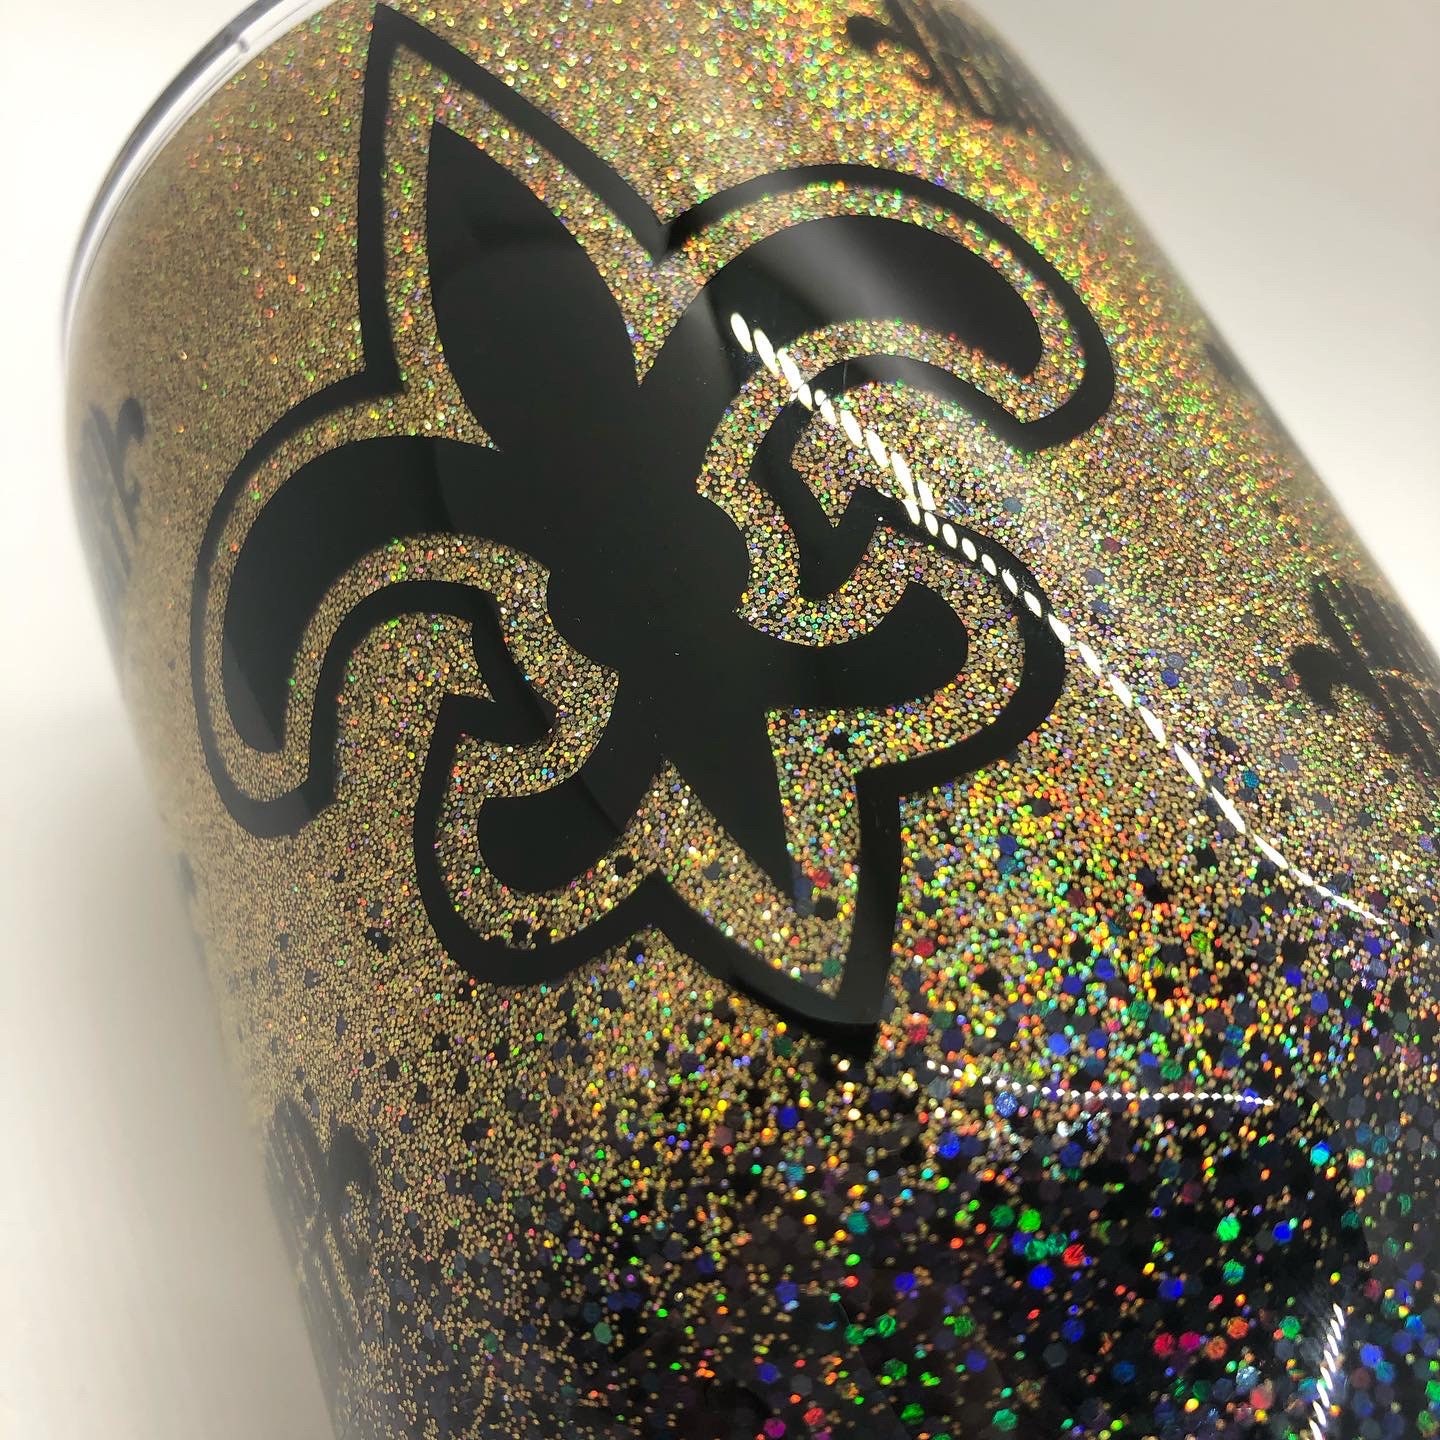 New Orleans Saints Glitter Stainless Steel Tumbler · Krave Designs